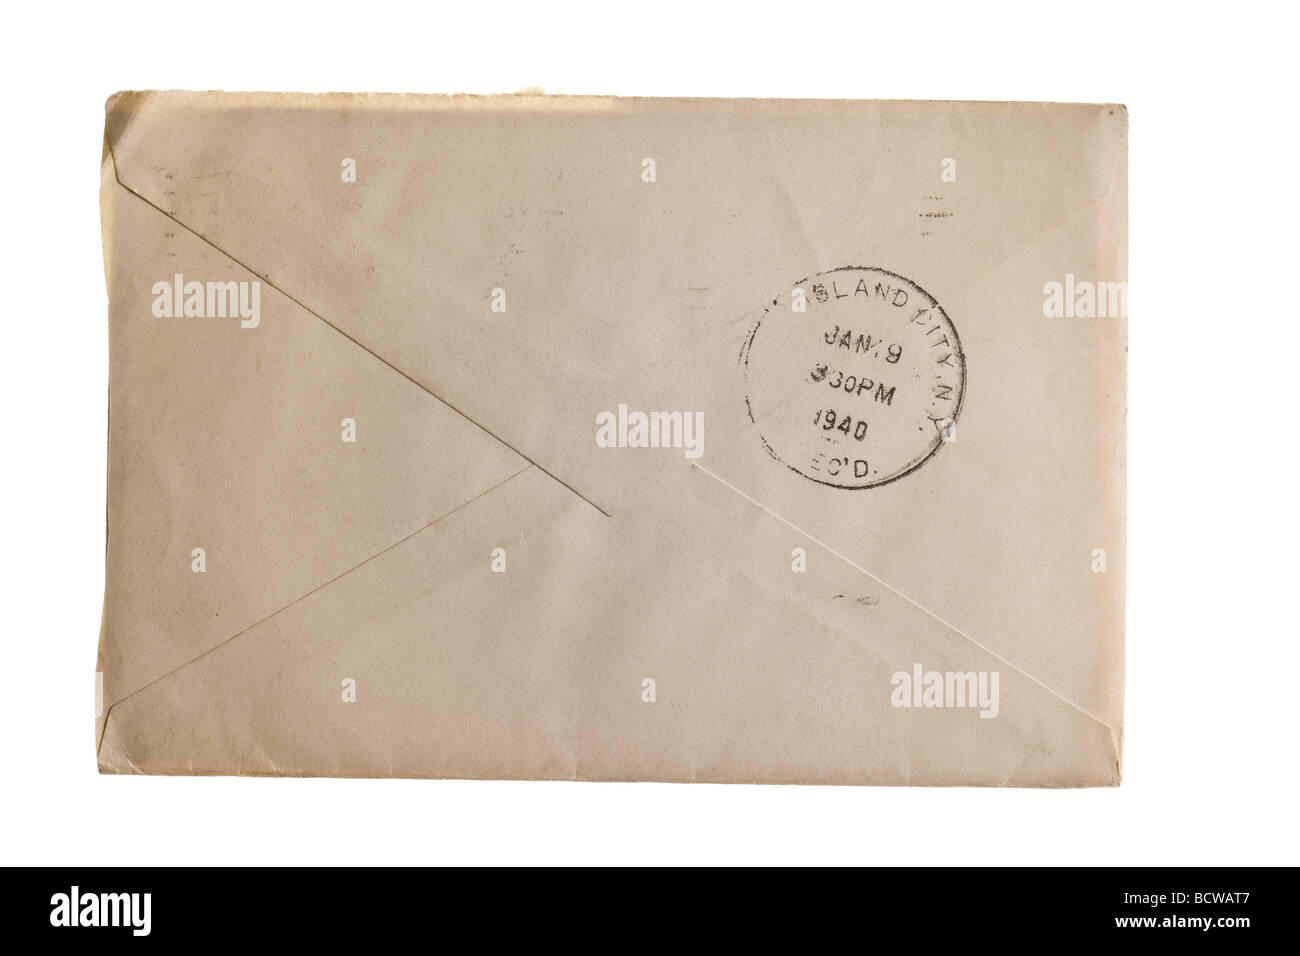 Vintage jauni enveloppe avec cachet stamp Banque D'Images